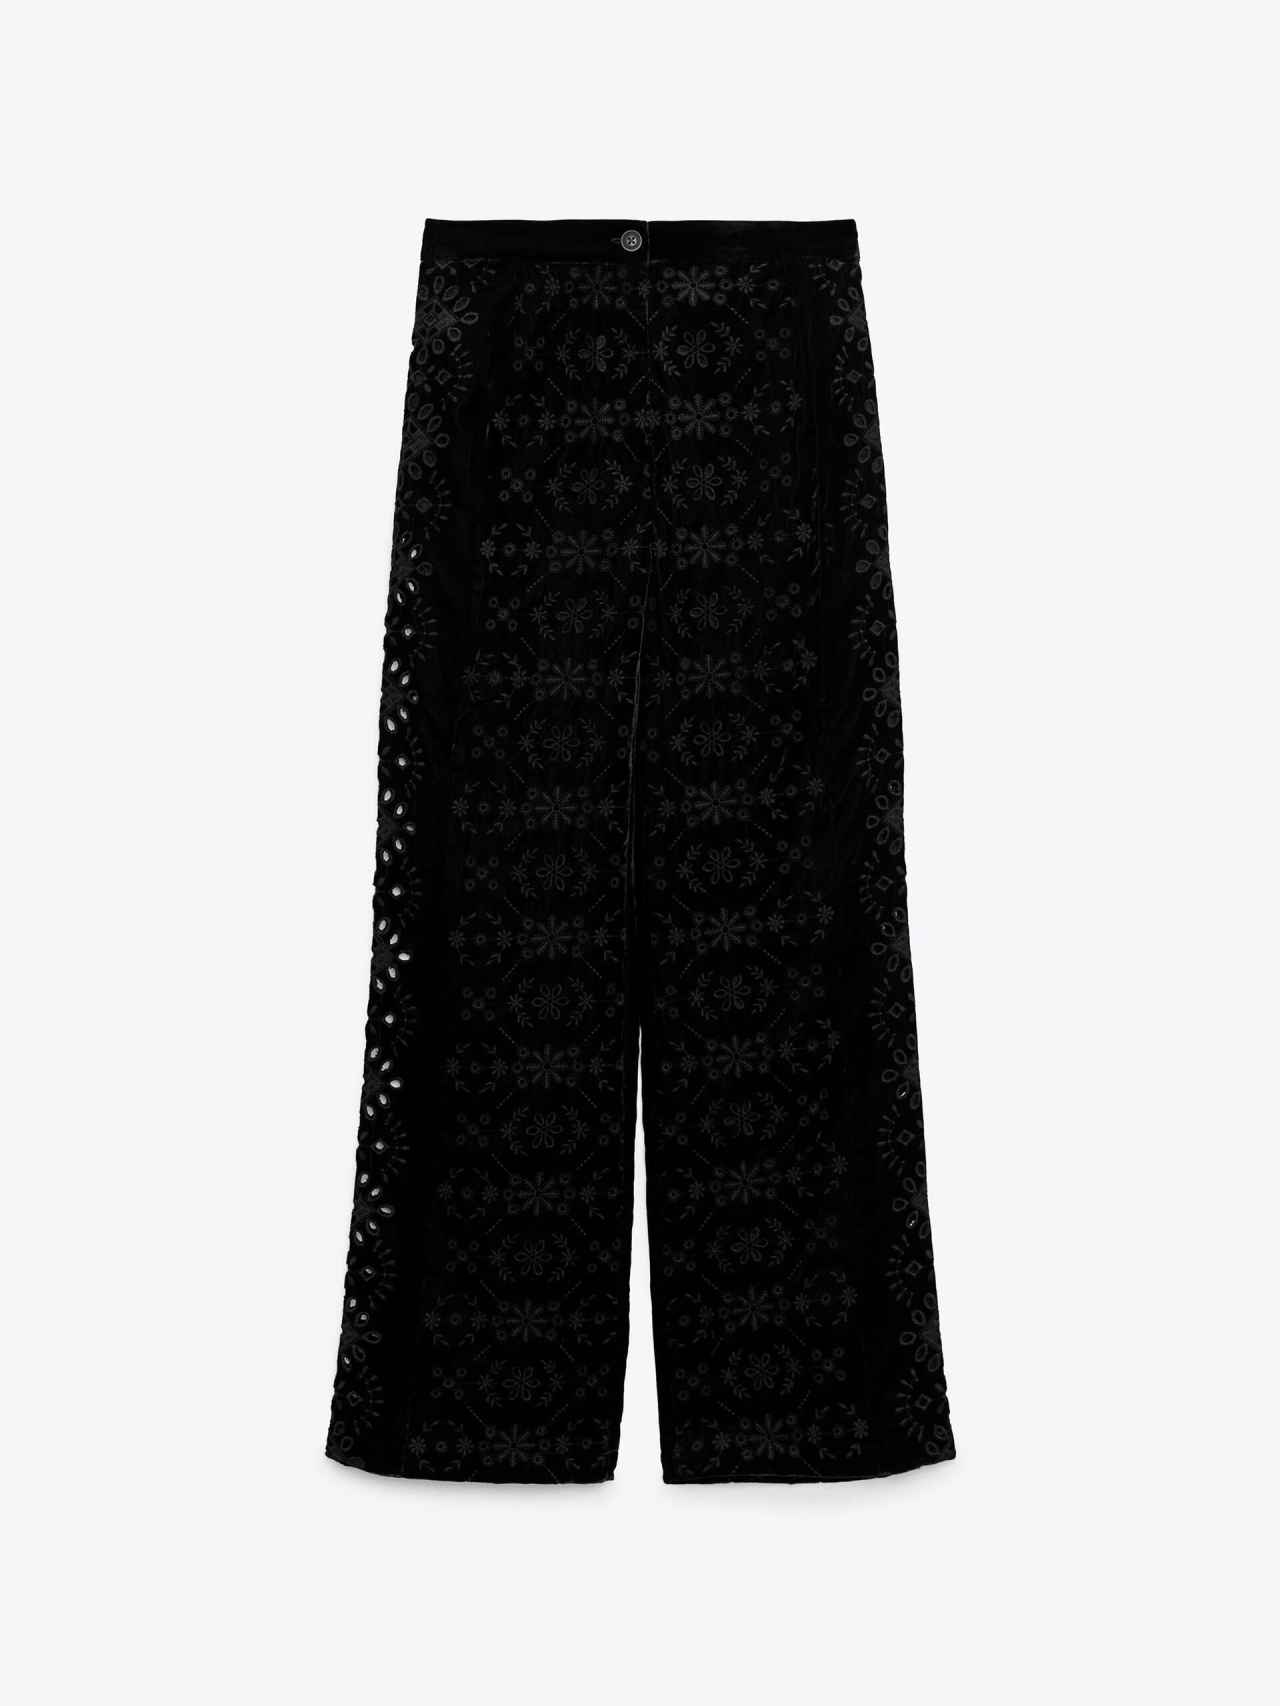 Pantalón de terciopelo bordado, de Zara (49,95 €).